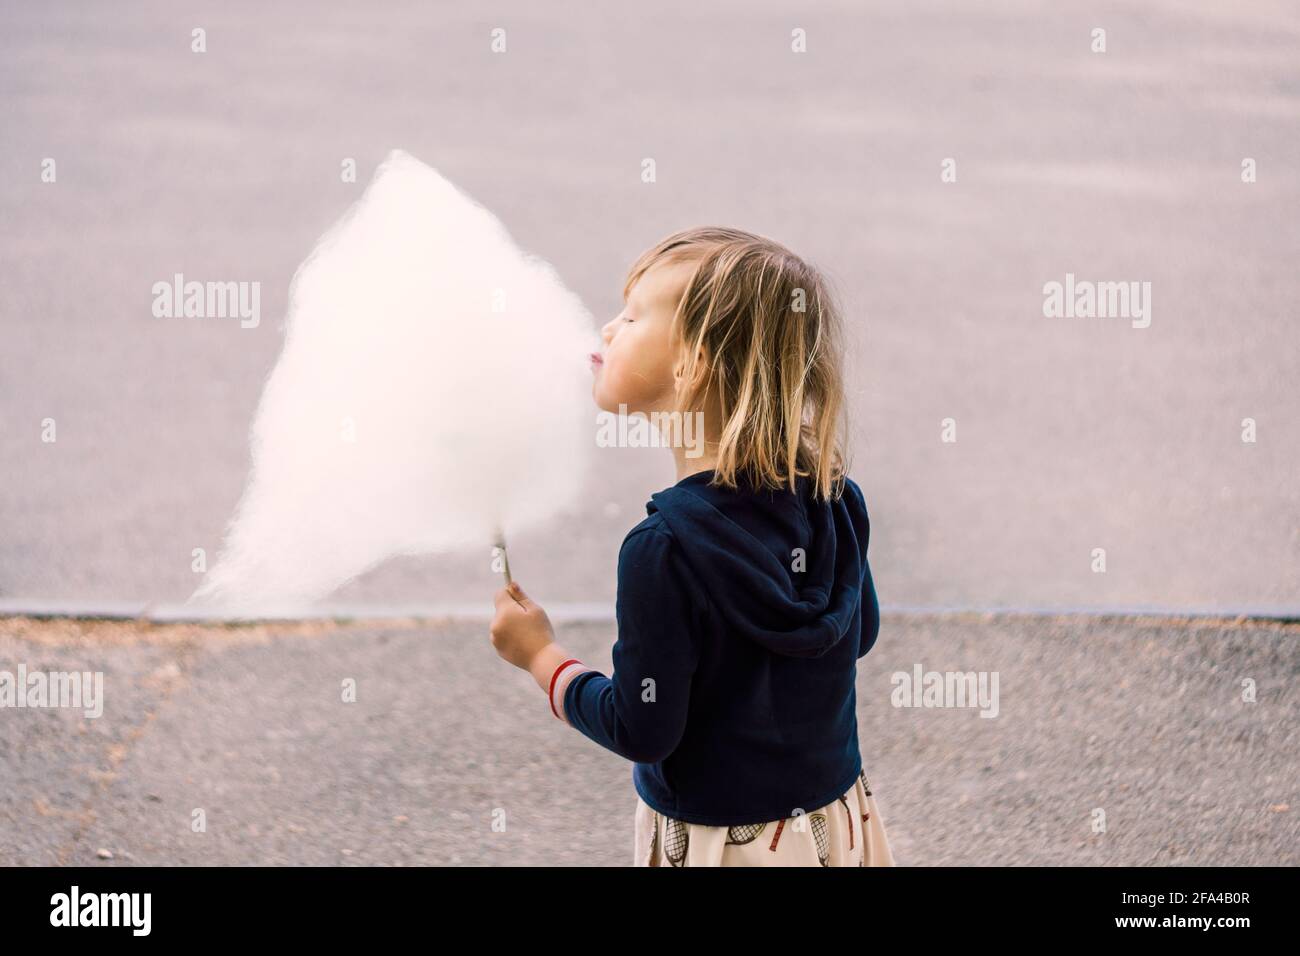 Adorable jeune fille de 3-4 ans qui mange des bonbons en coton Banque D'Images